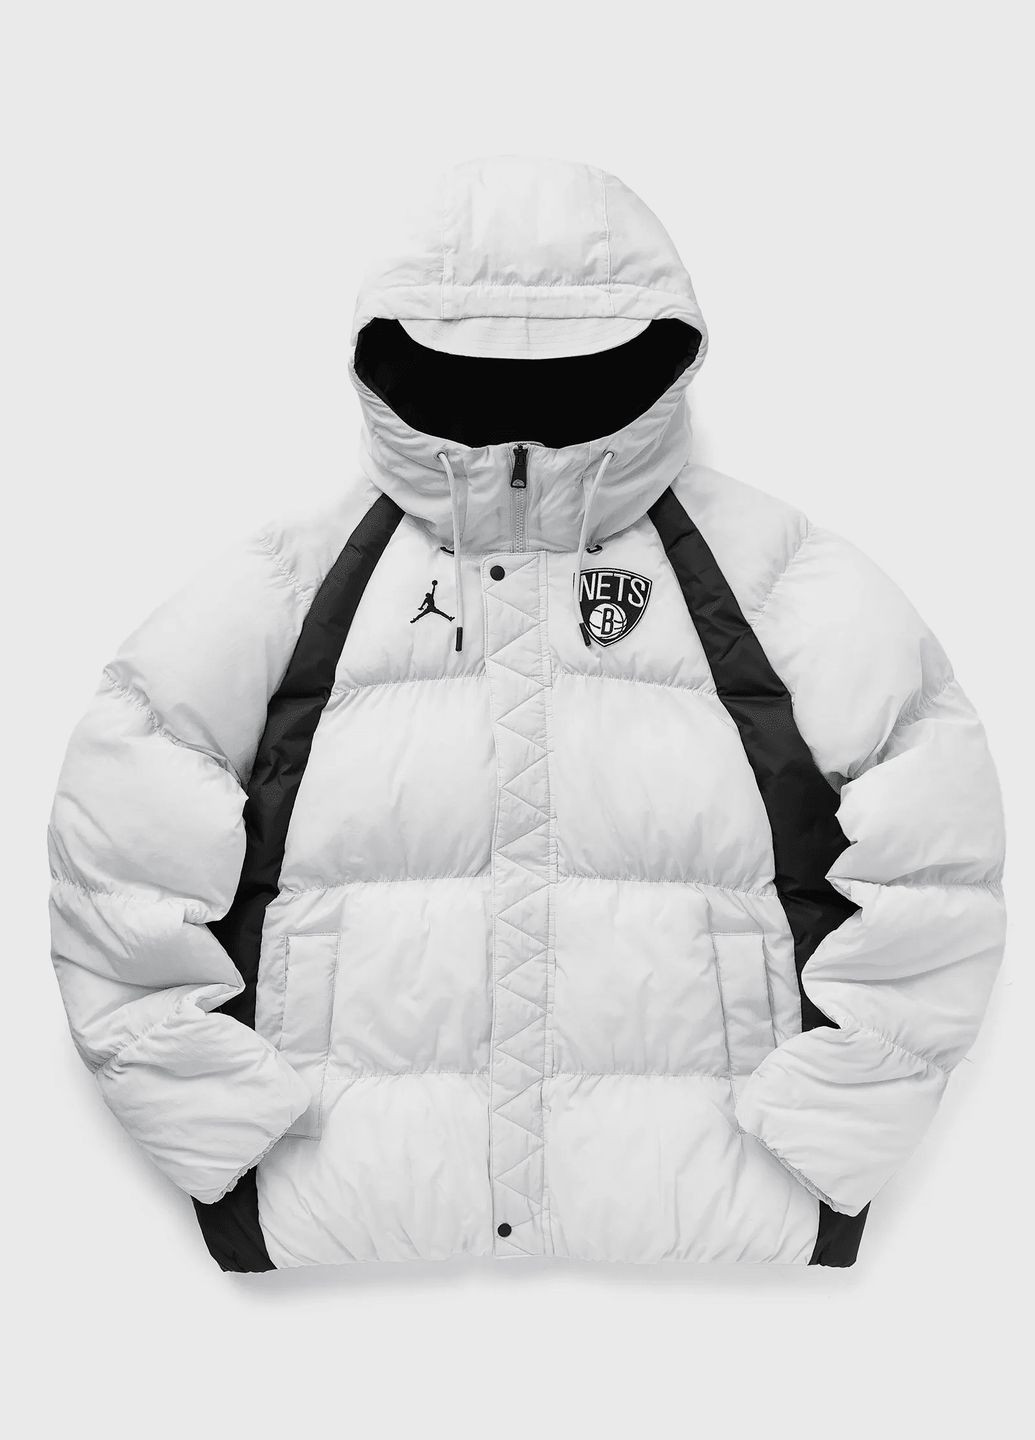 Біла демісезонна куртка чоловіча jordan brooklyn nets courtside dn9769-043 зима біла Nike